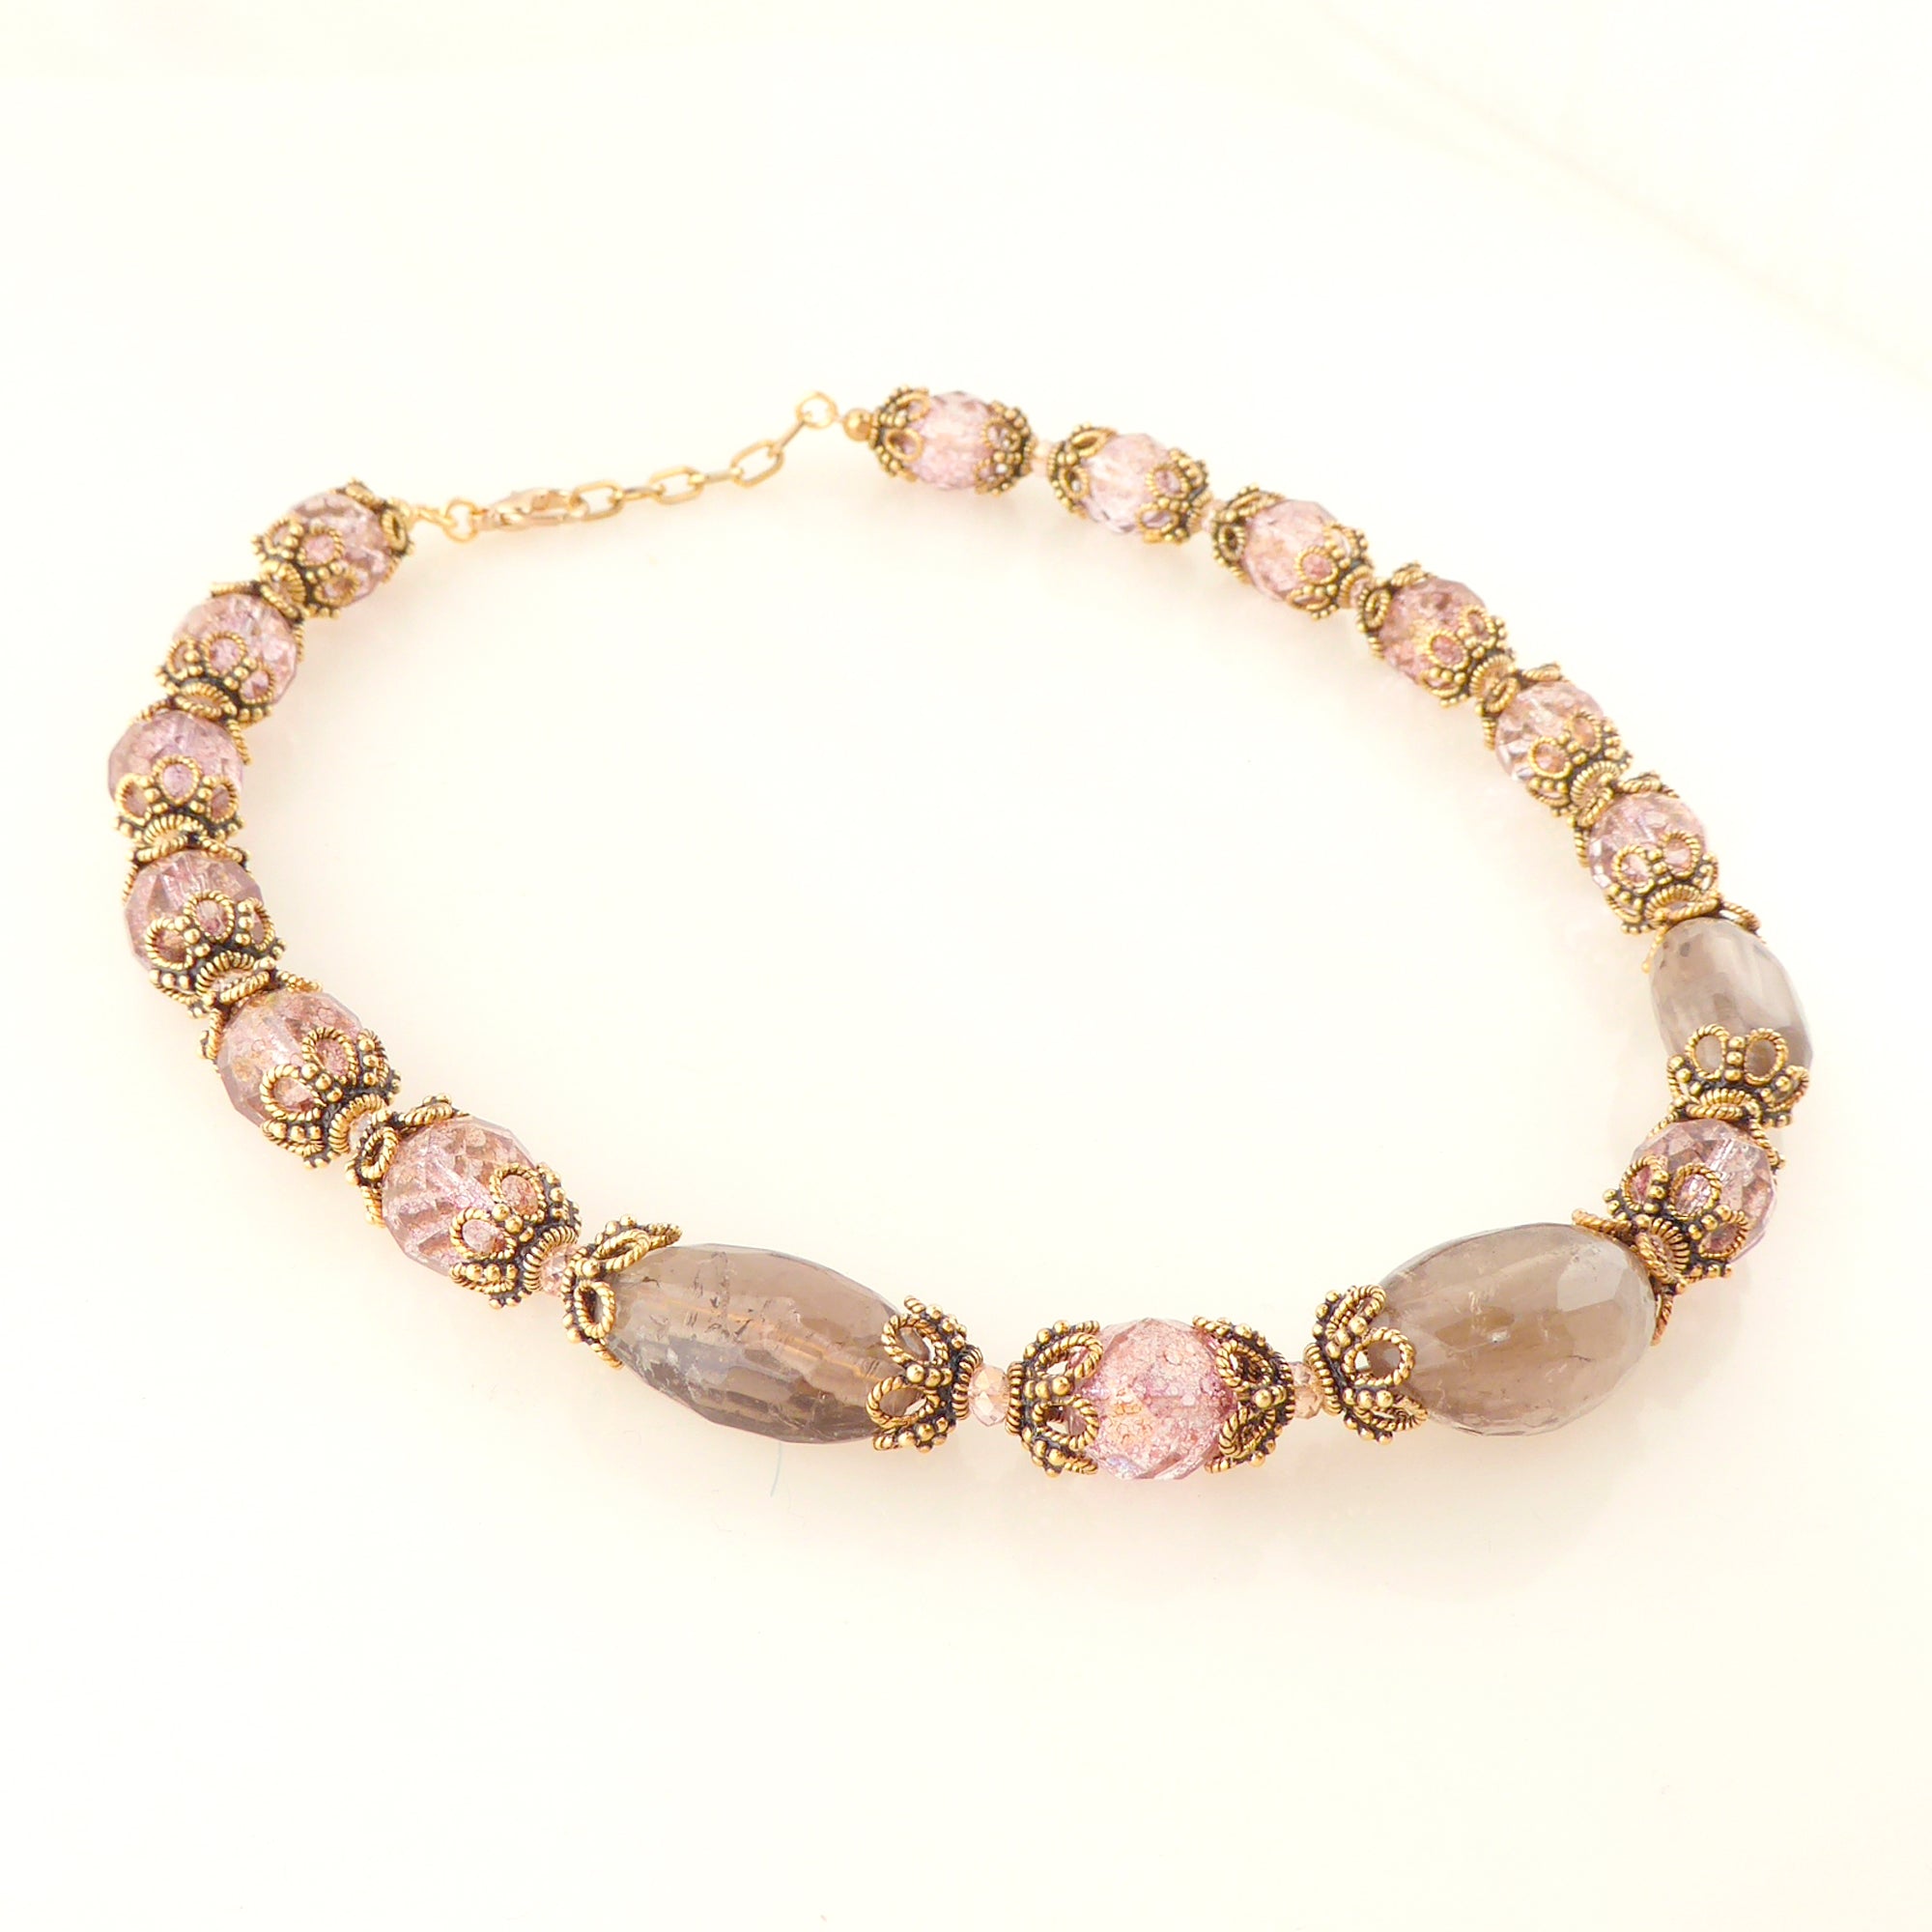 Greige quartz rococo necklace by Jenny Dayco 2